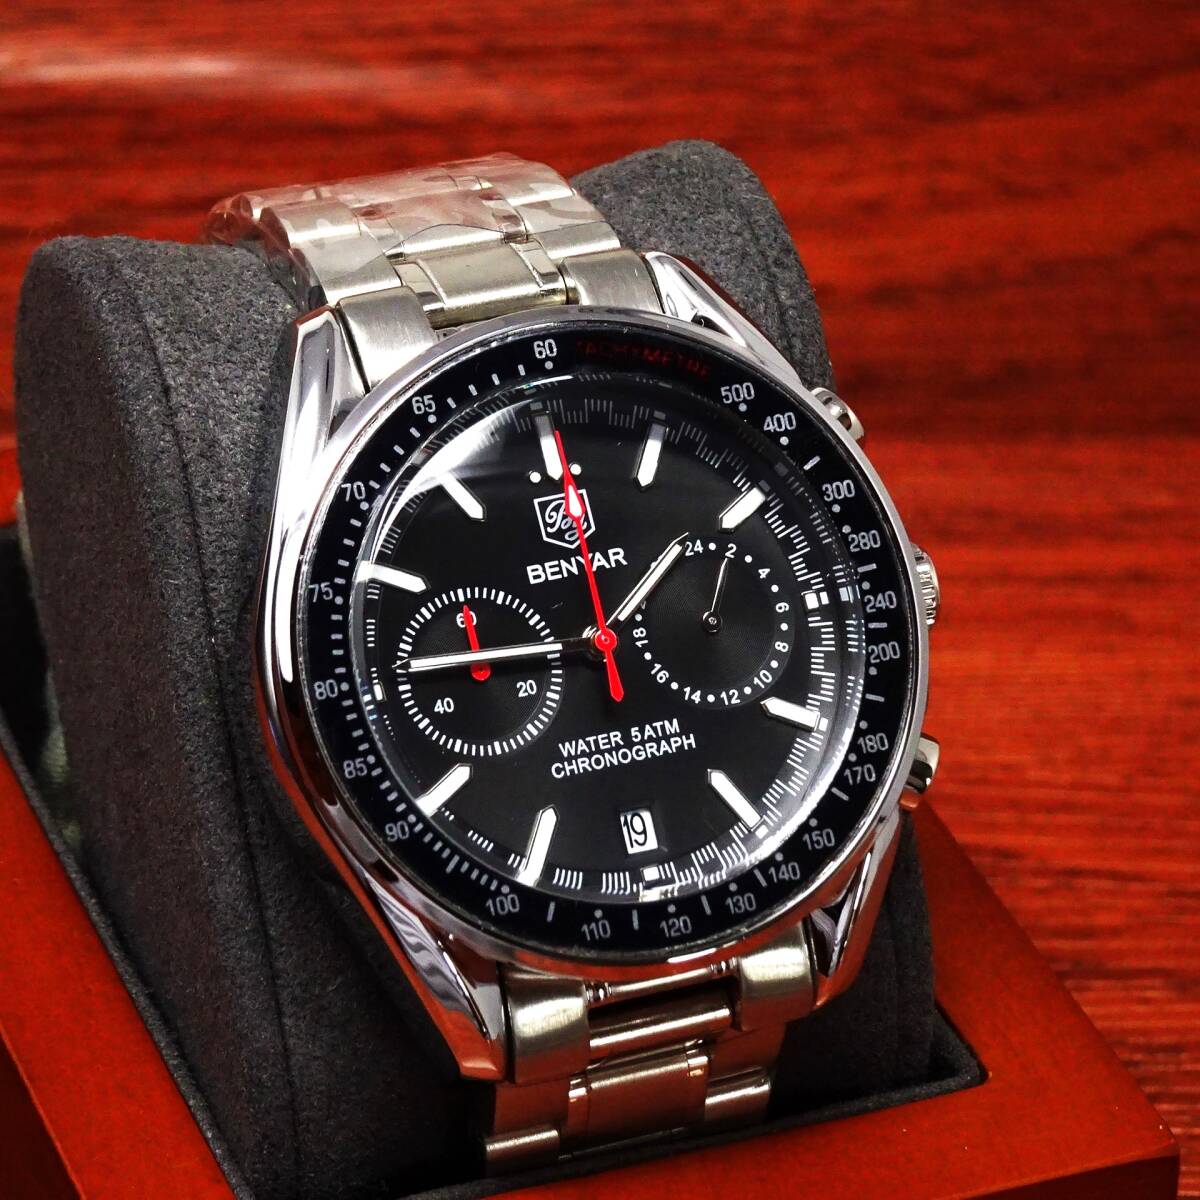 送料無料・新品・BENYARブランド・メンズ・クロノグラフ・24時間、カレンダー表示・クオーツ式腕時計・フルメタルスポーツモデルの画像1